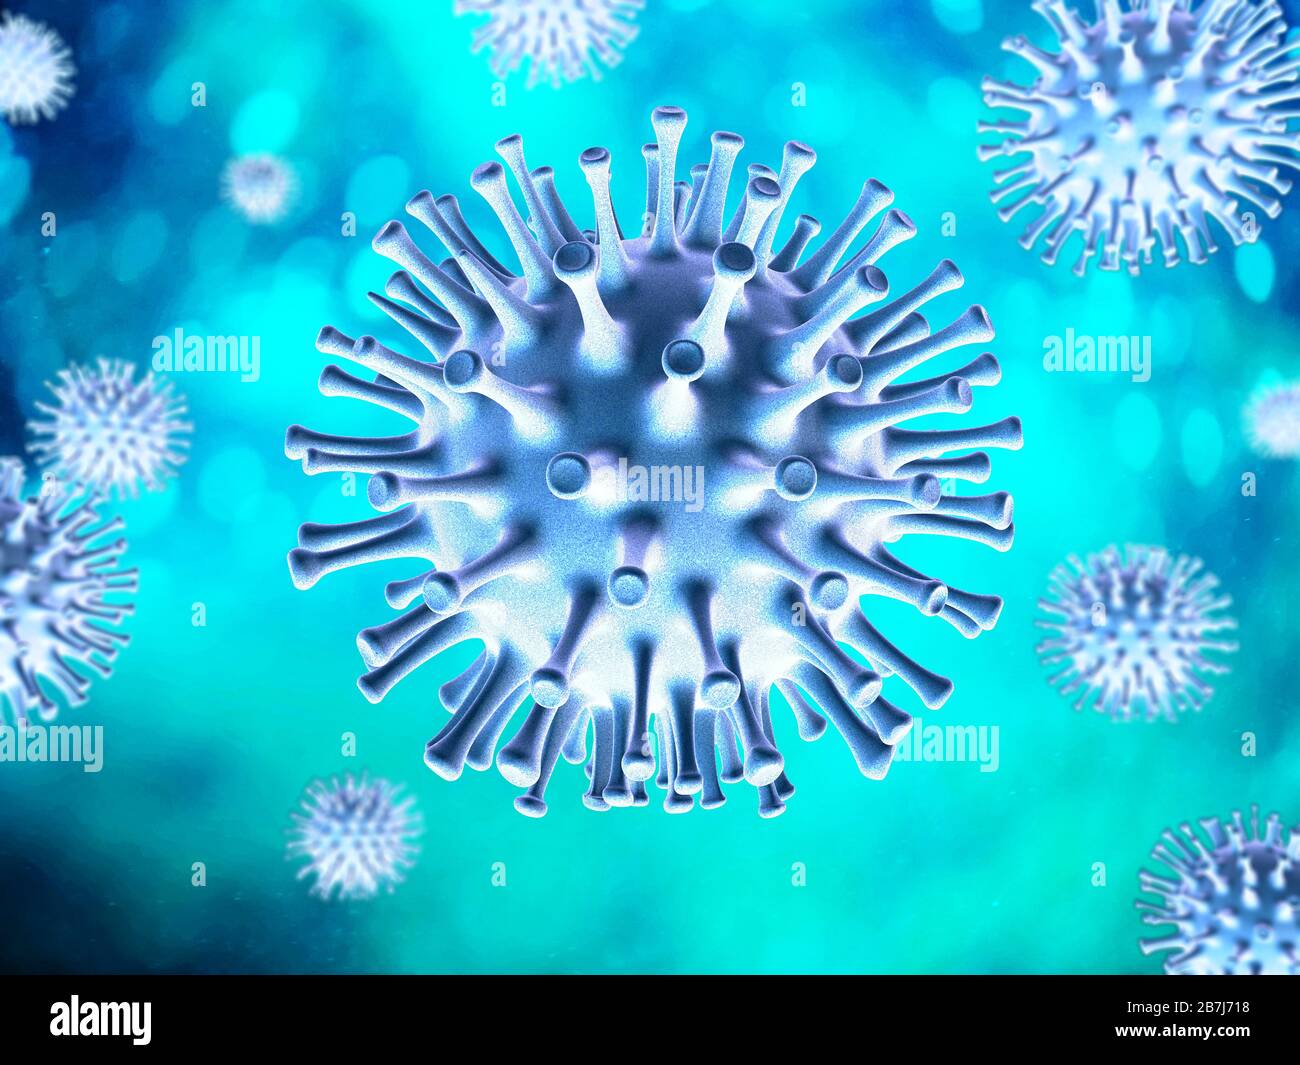 Scène du virus Corona. Sujets bleus sur fond turquoise. Banque D'Images